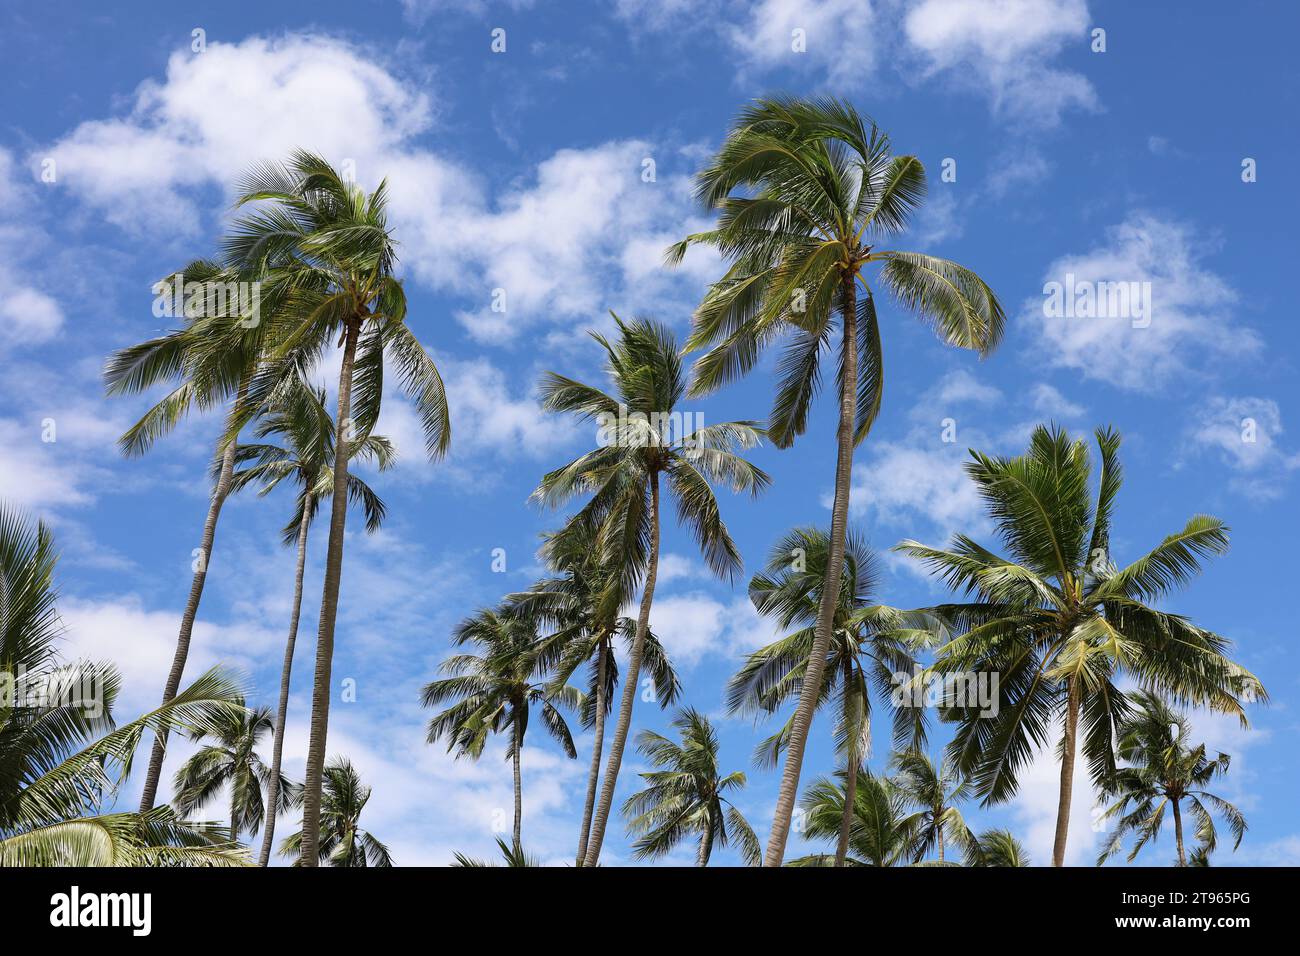 Cocotiers sur fond de ciel bleu et nuages blancs. Plage tropicale, nature paradisiaque en journée ensoleillée Banque D'Images